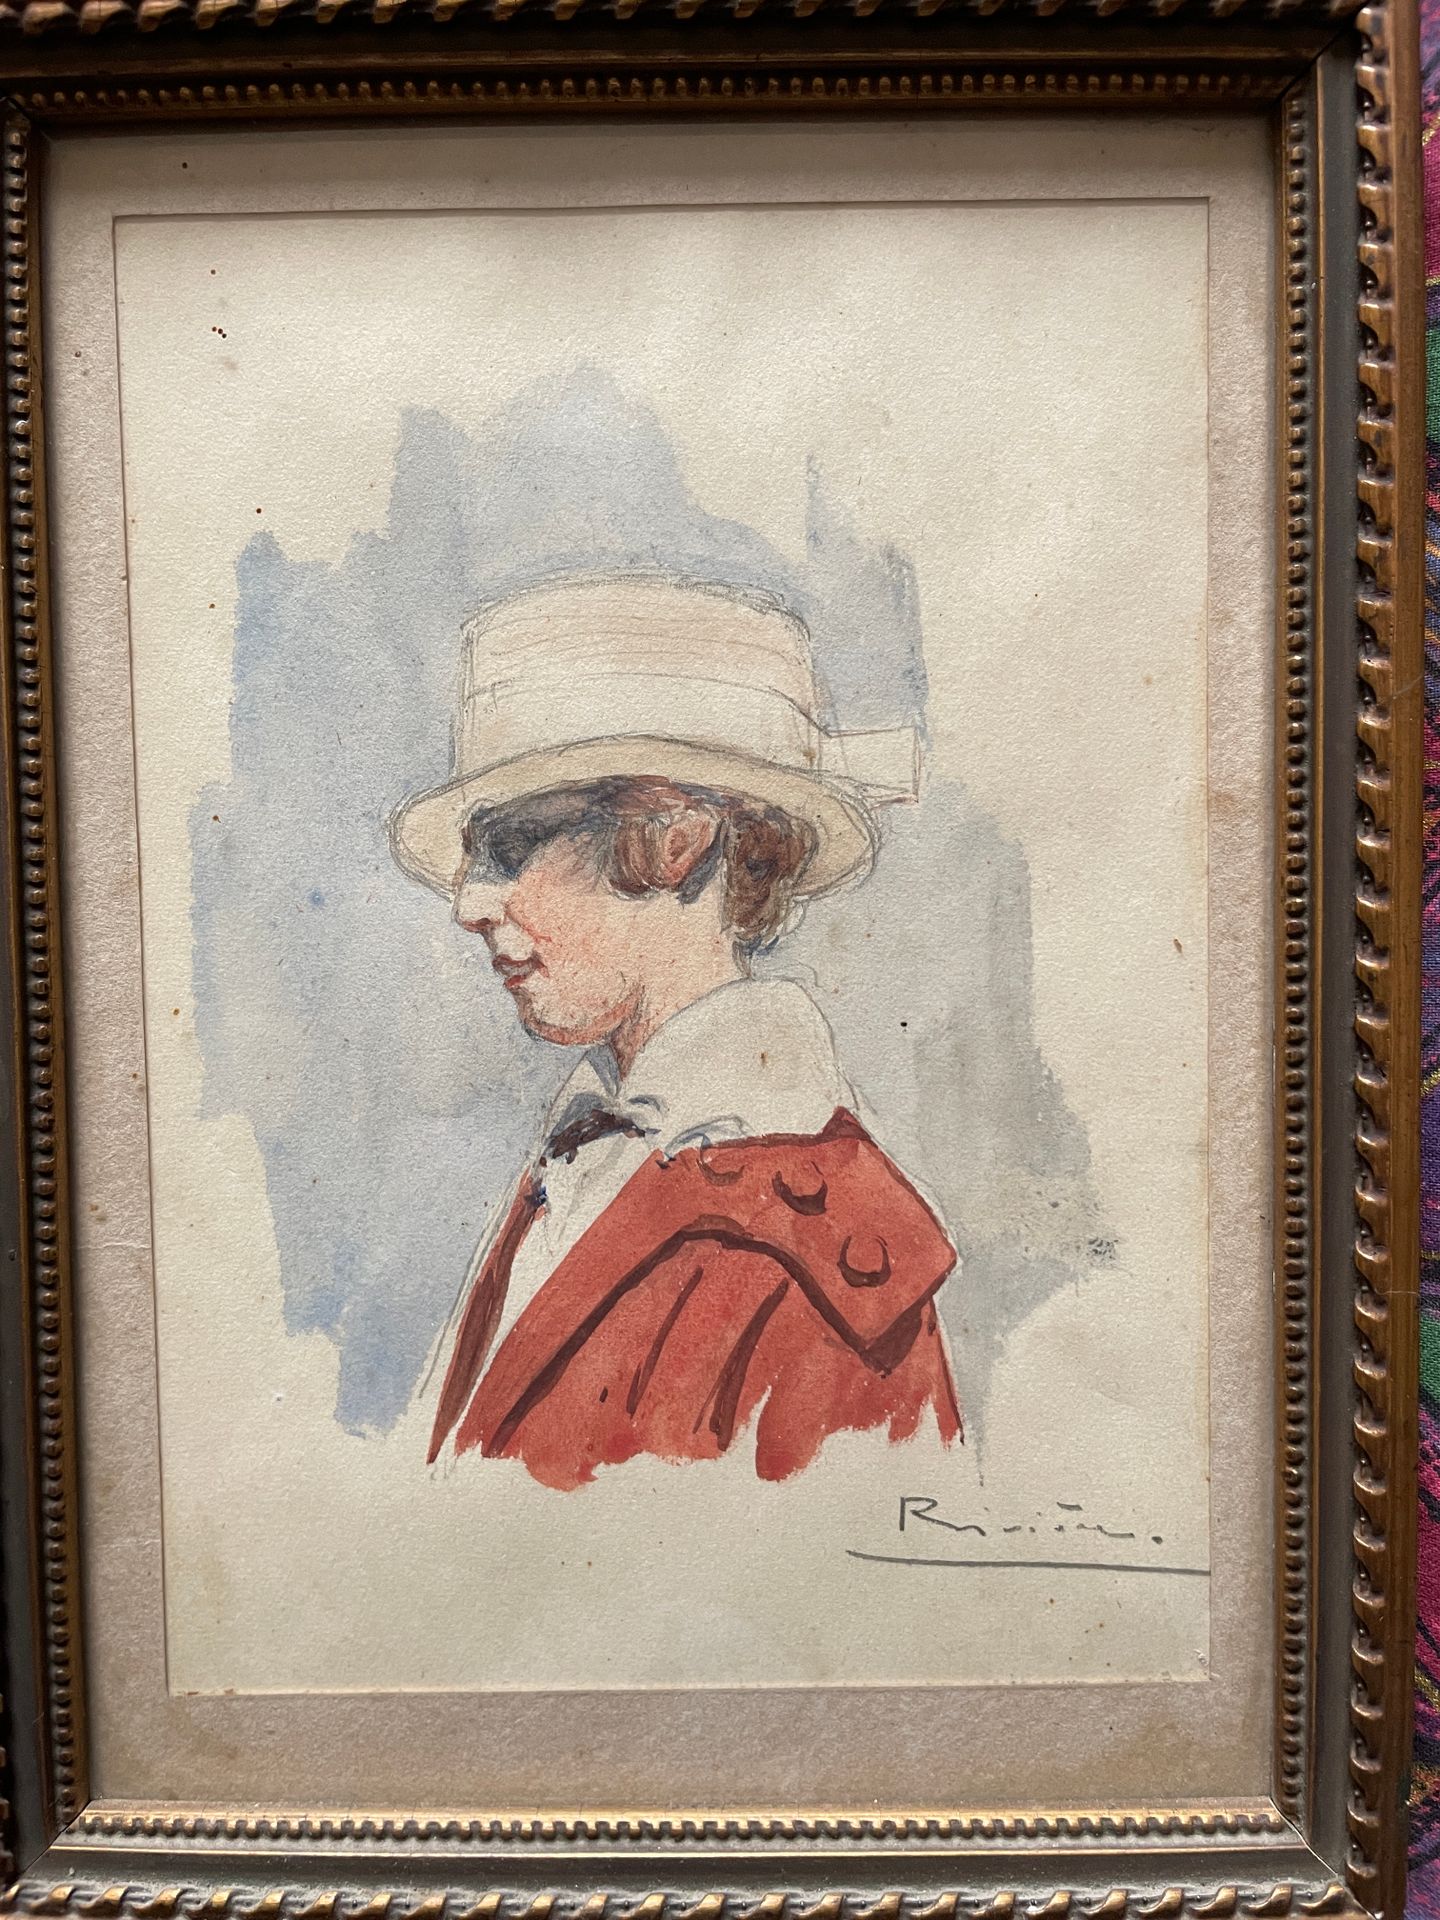 Null RIVIERE Attivo nel 20° secolo

Donna con un cappello e un vestito rosso

Ac&hellip;